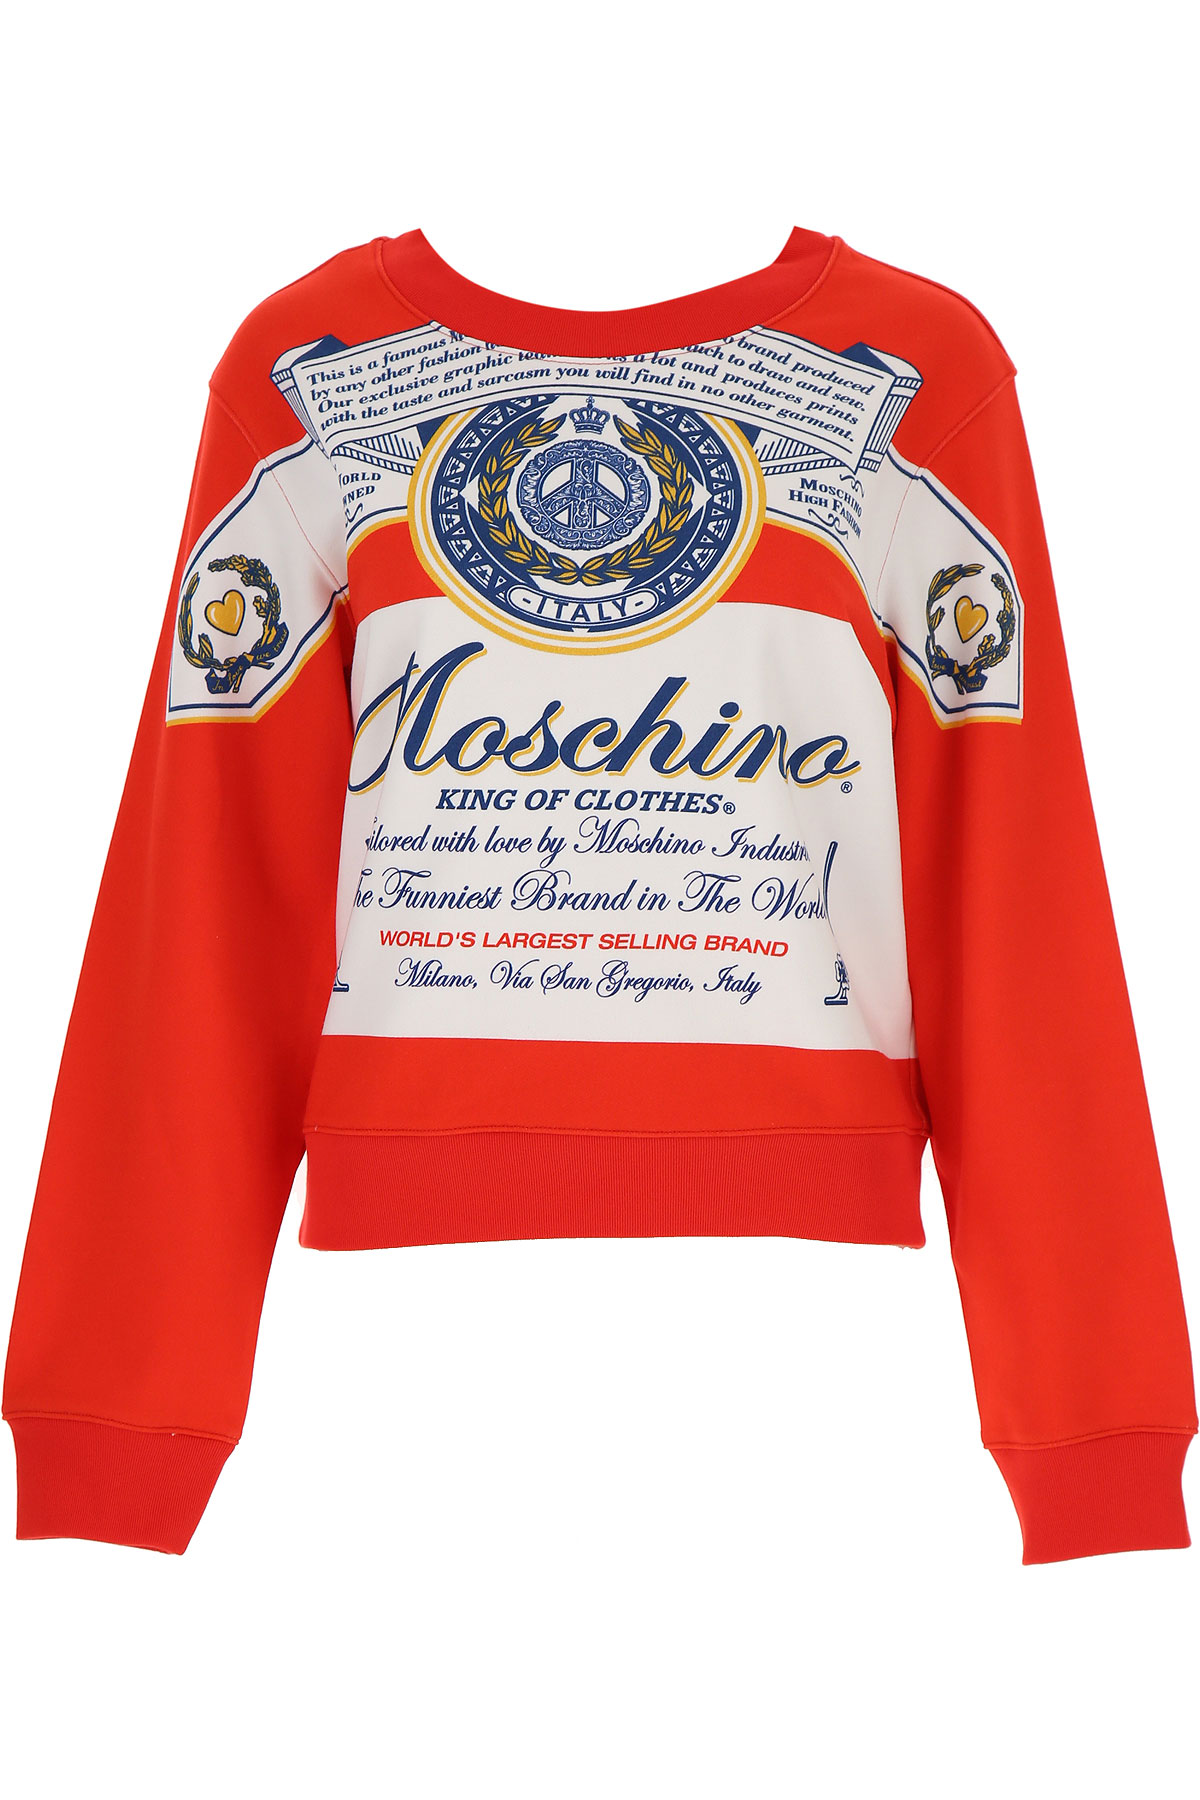 Moschino Sweatshirt für Damen, Kapuzenpulli, Hoodie, Sweats, Weiss, Baumwolle, 2017, 40 44 M